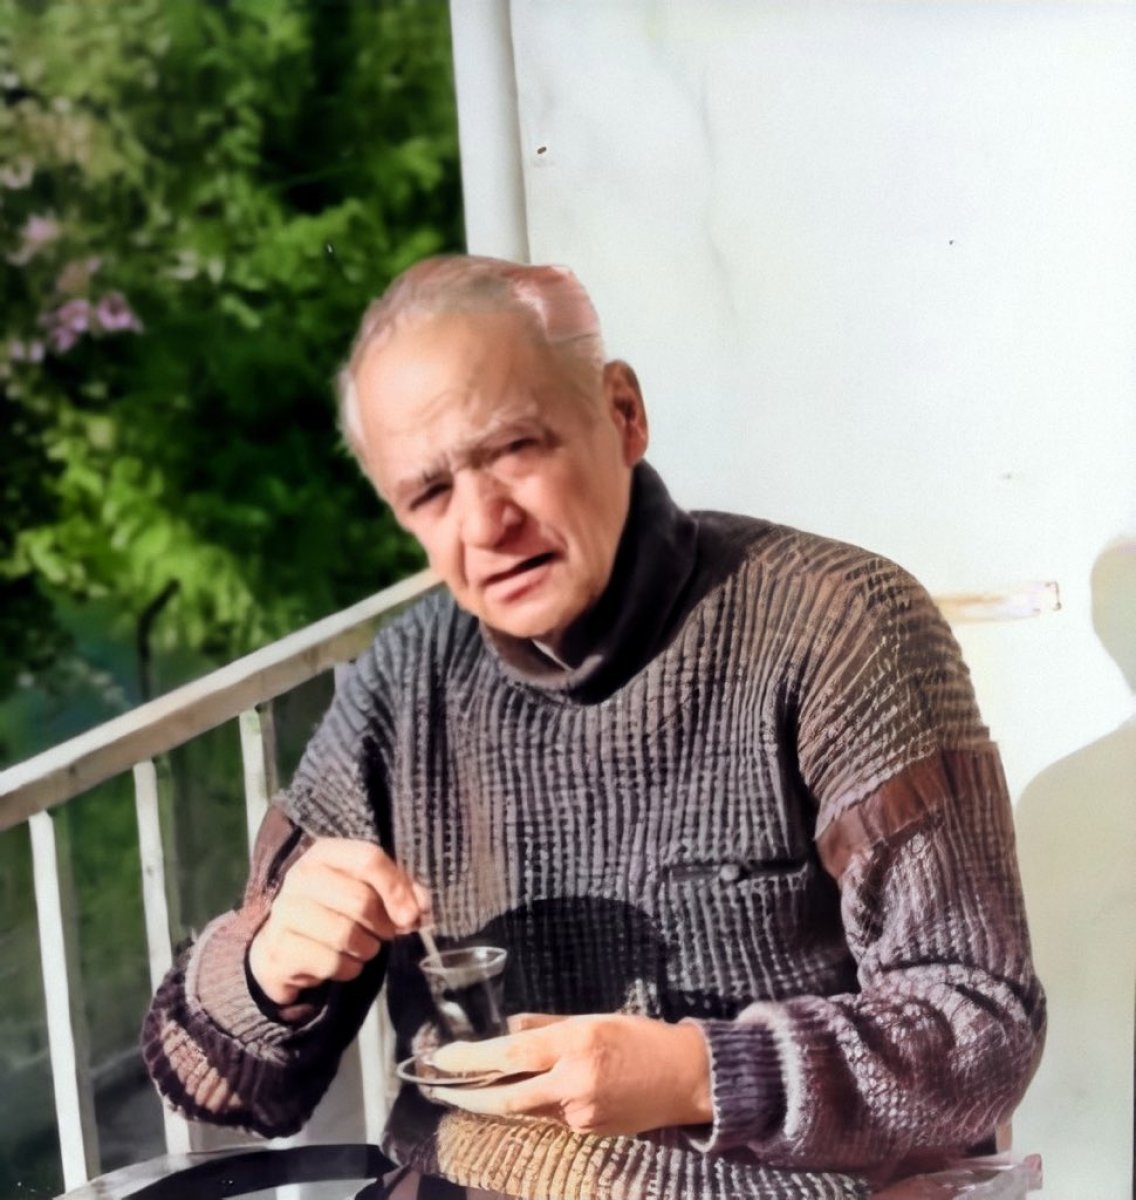 Hababam Sınıfı nın yazarı Rıfat Ilgaz 110 yaşında #4